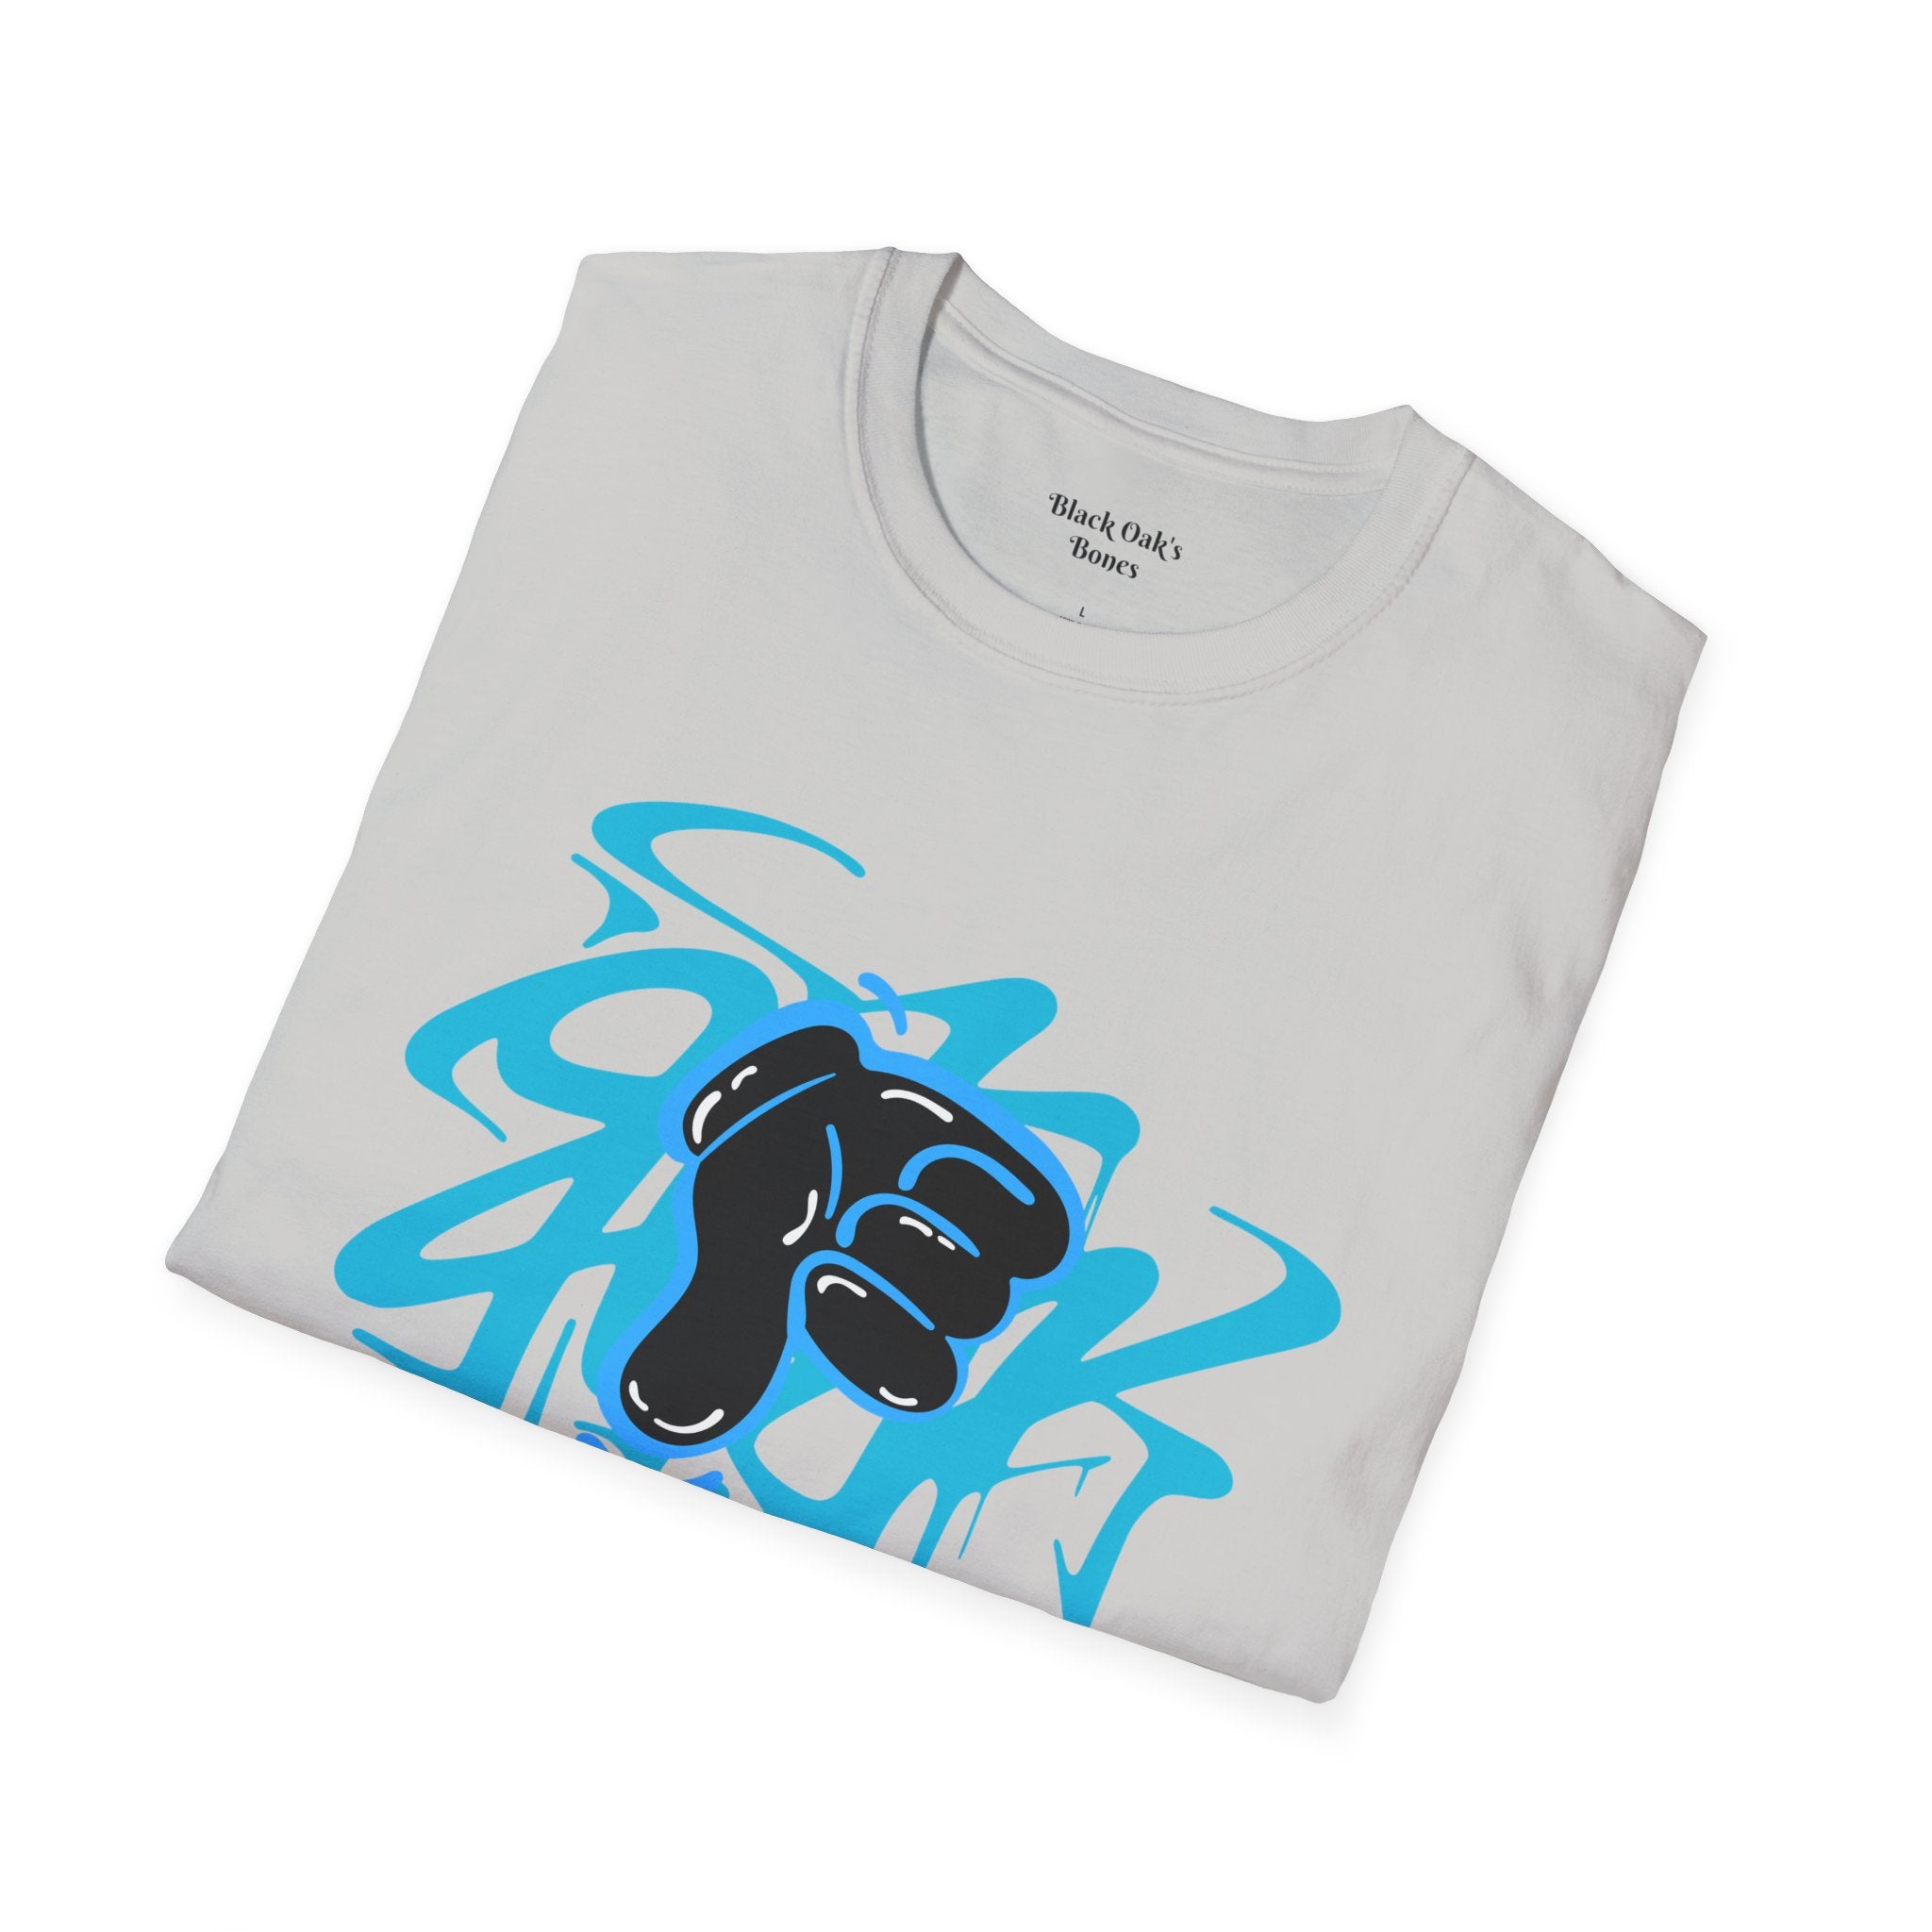 FURDreams “Ticketmaster” III Softstyle T-Shirt